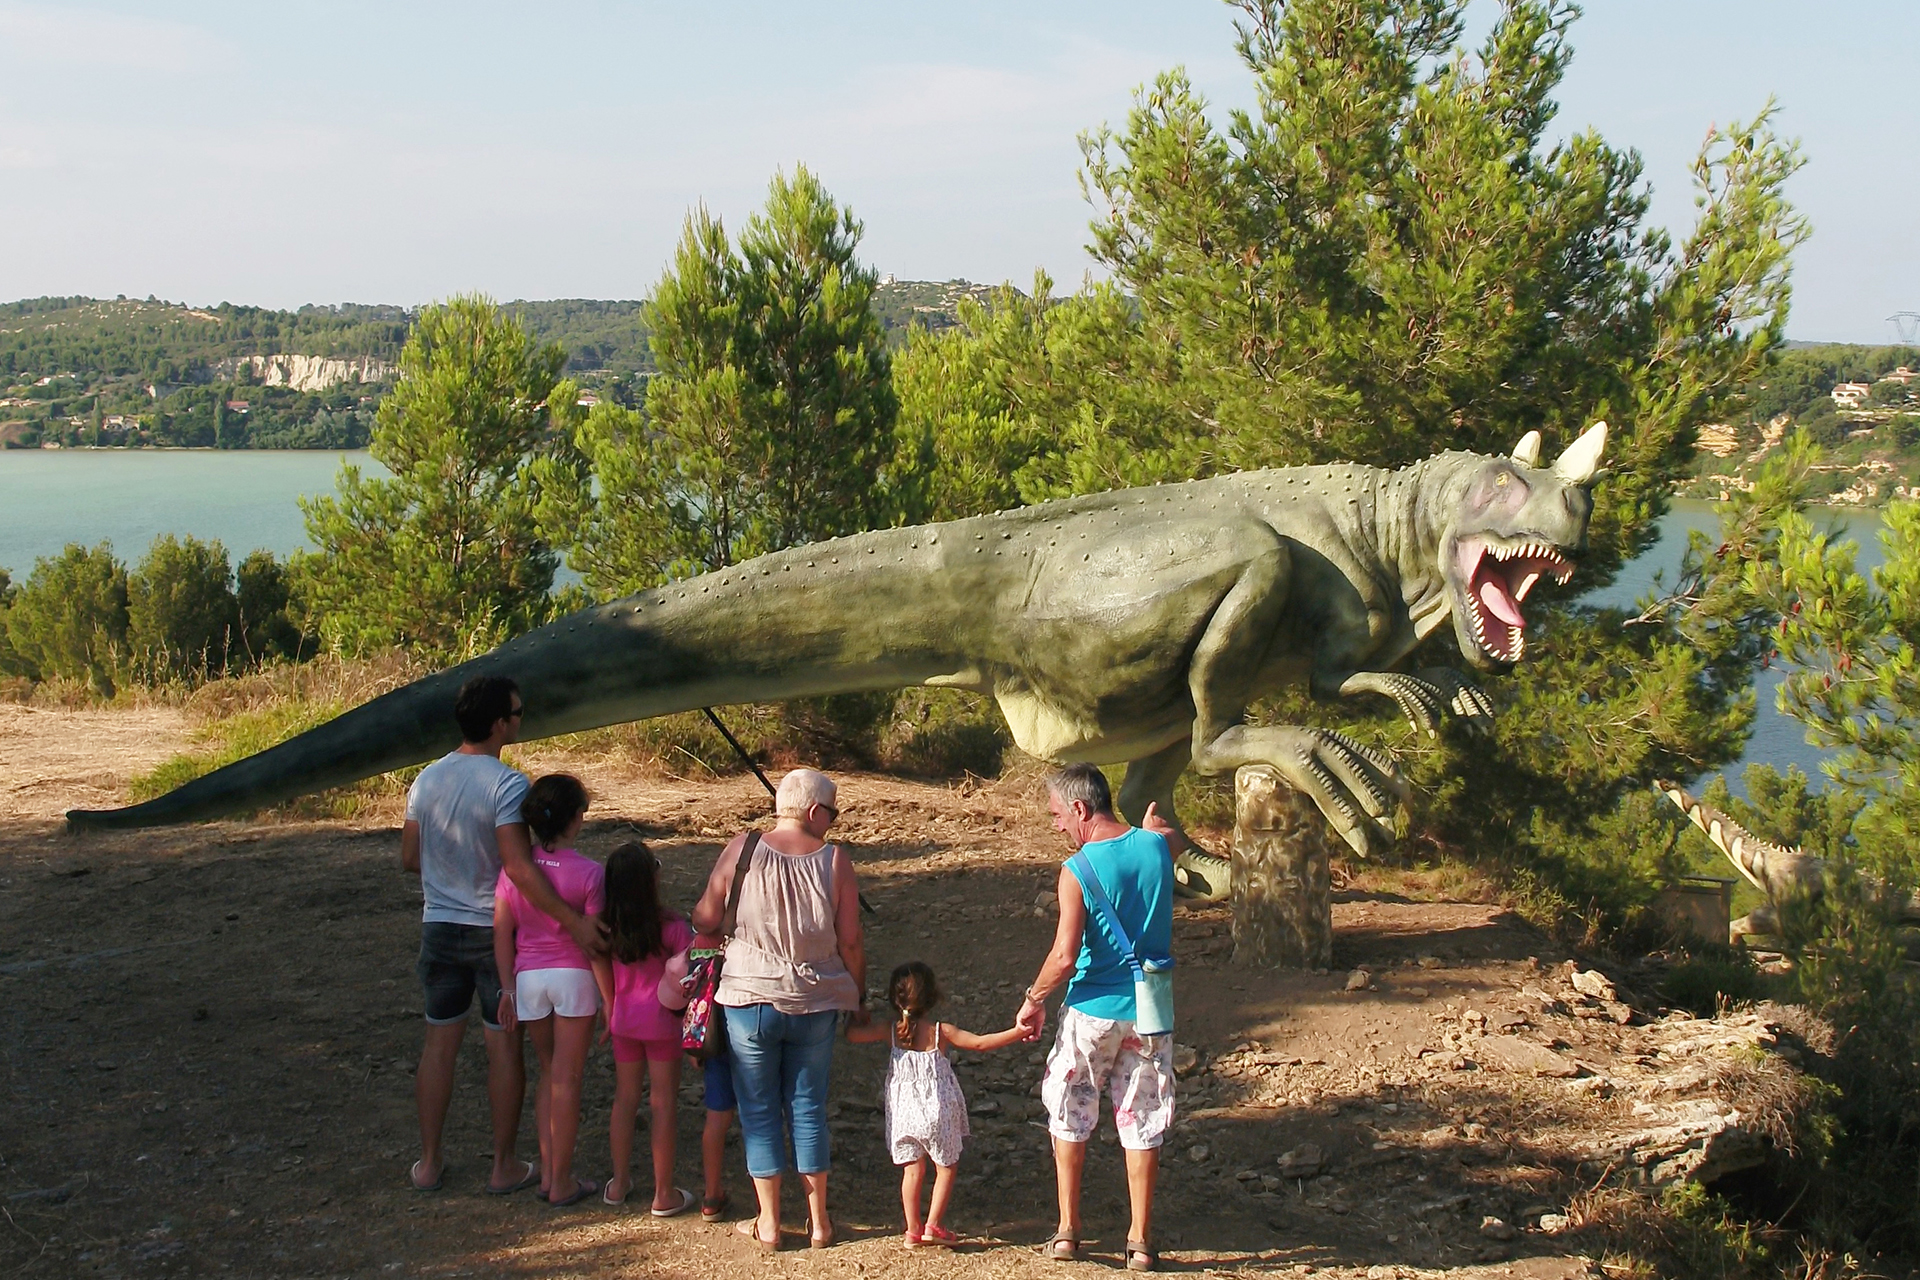  Dinosaur'istres, parcours pédagogique et ludique avec des dinosaures pour les familles - © Service Communication ville d'Istres